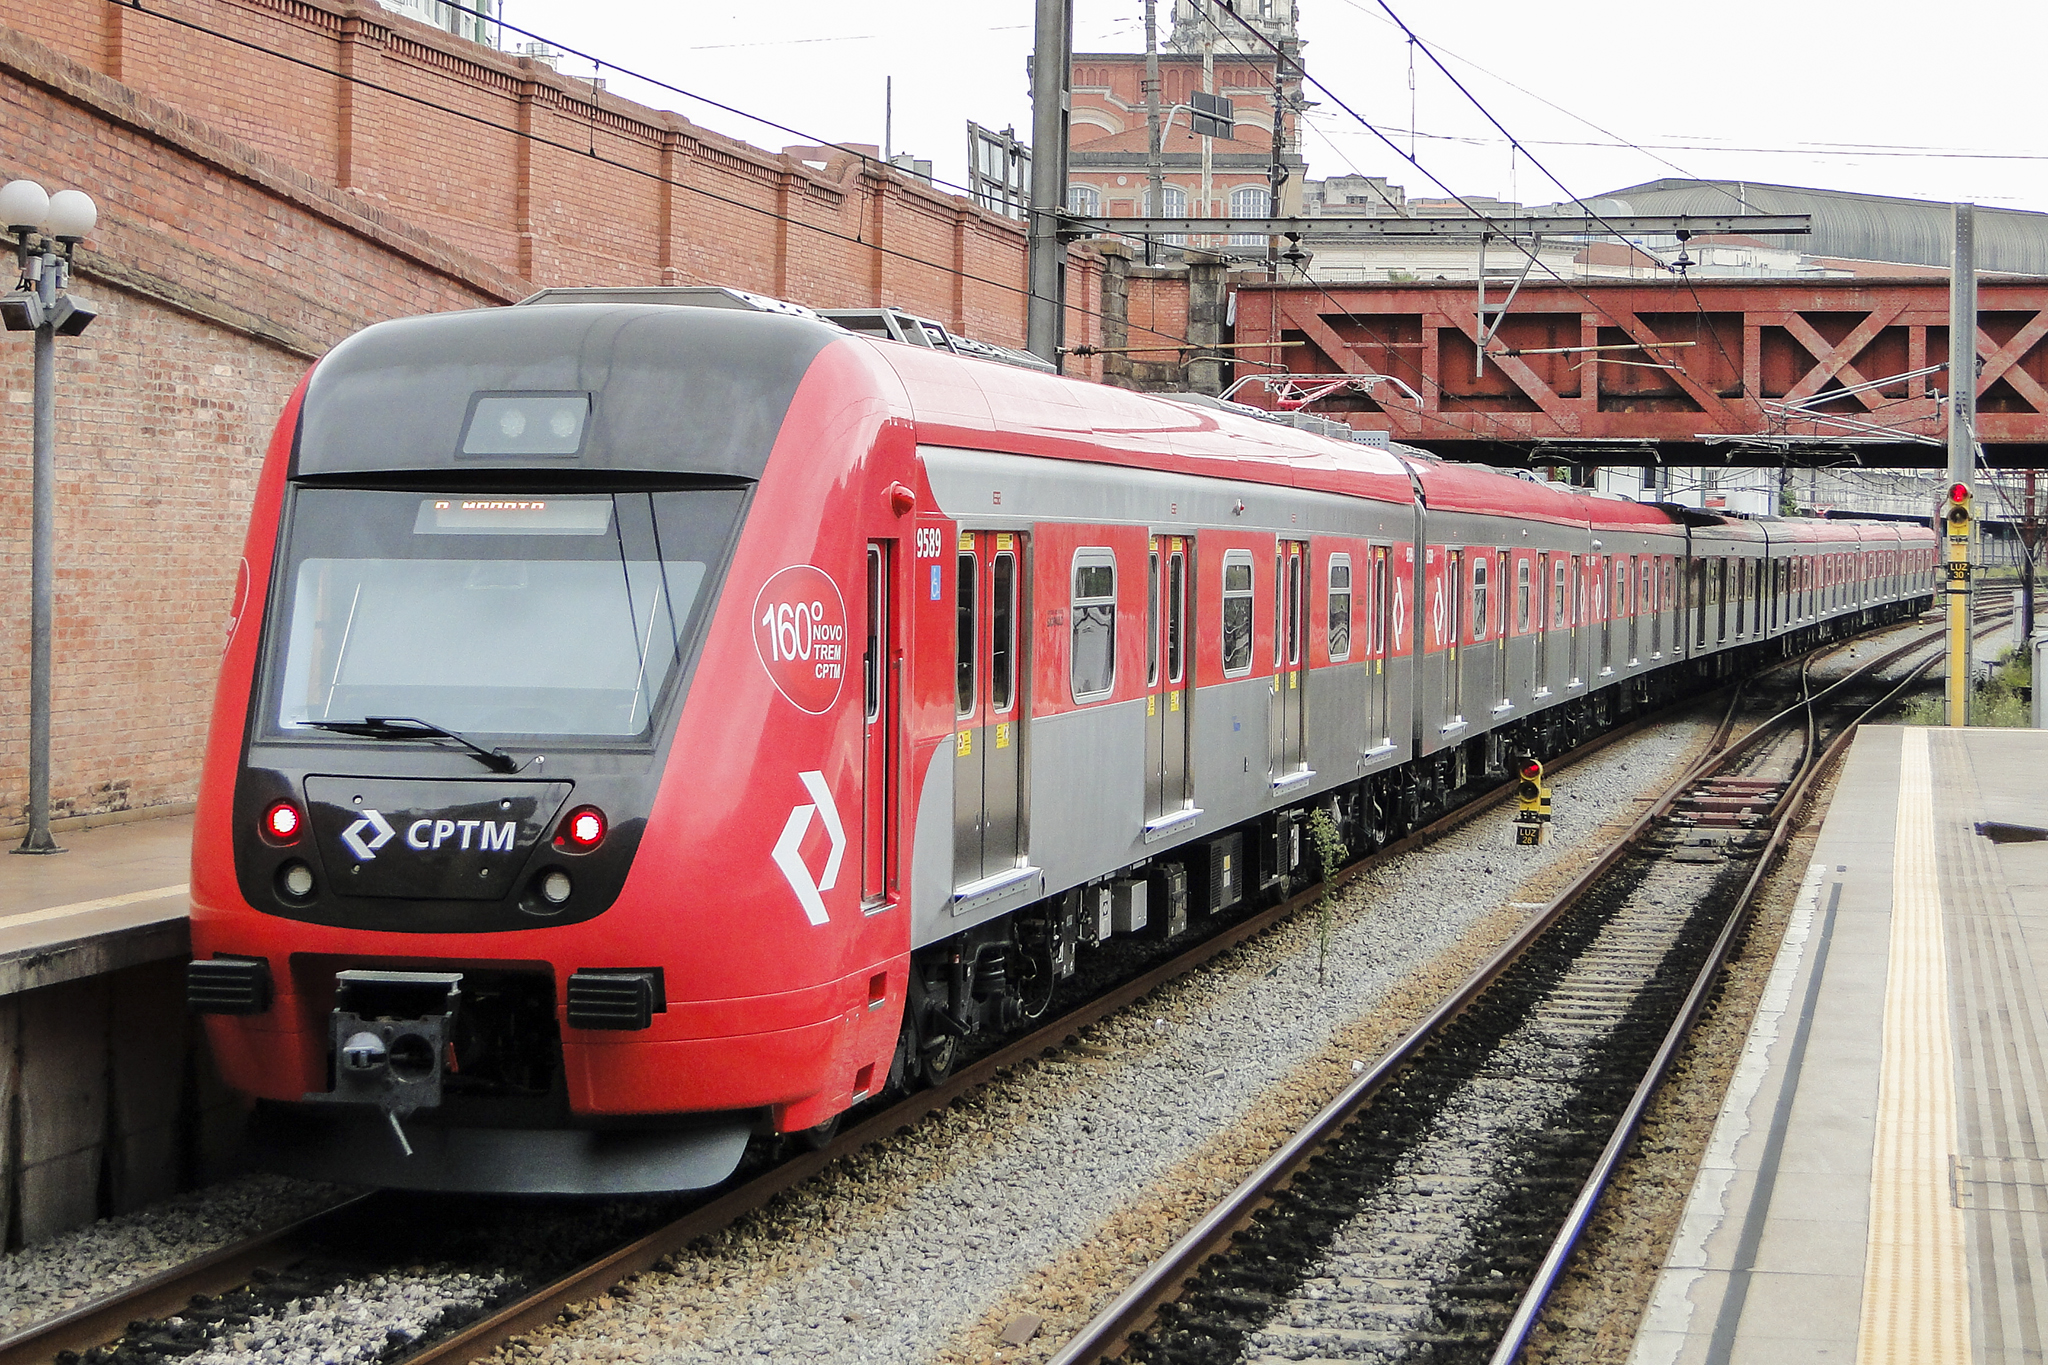 CPTM entrega mais 2 trens novos | CPTM